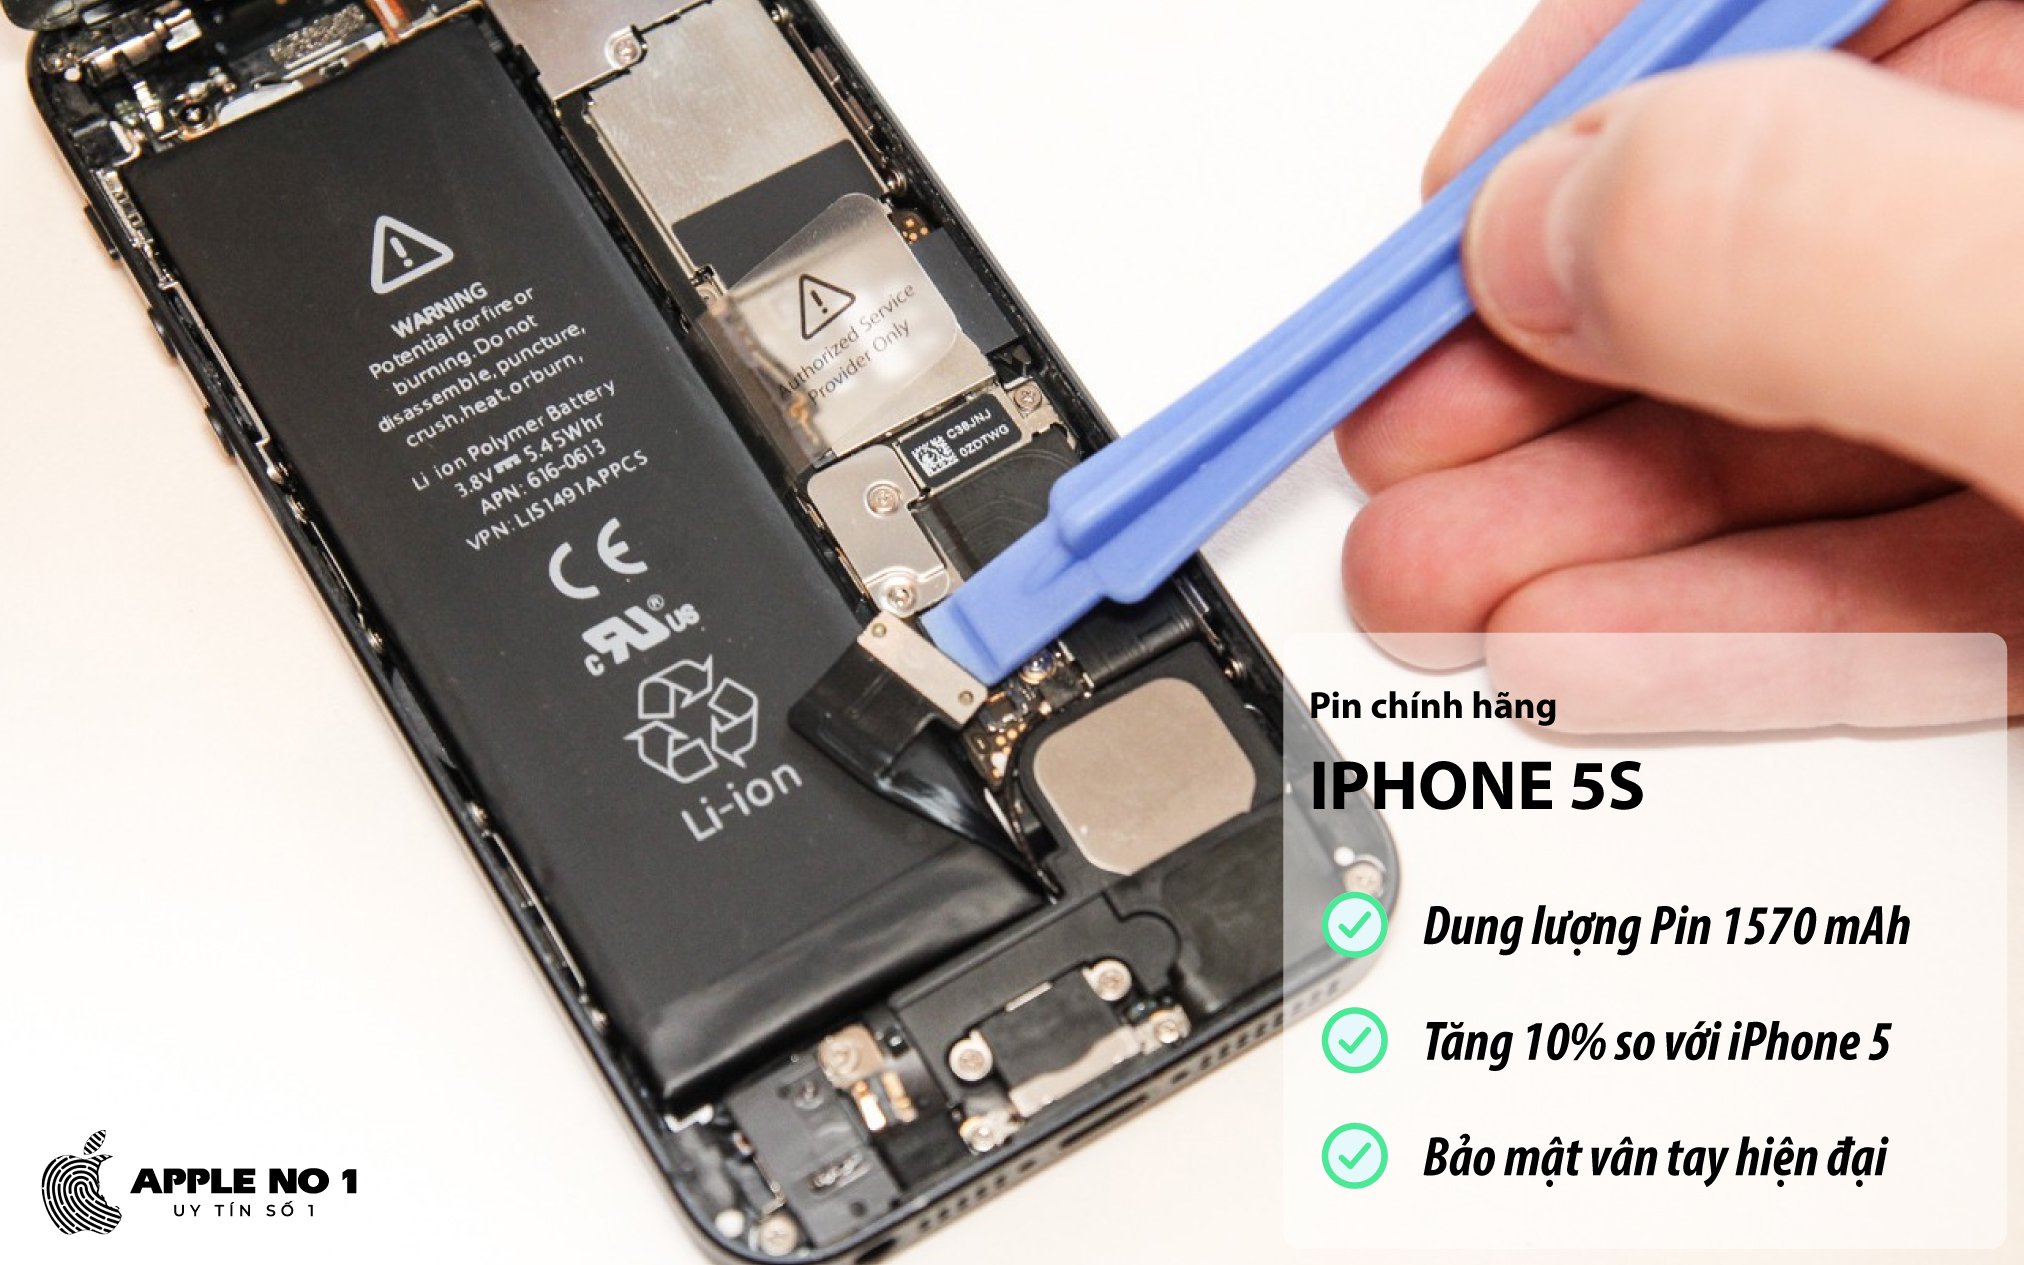 Điện thoại iPhone 5s có dung lượng pin 1570 mAh, tăng 10% so với iPhone 5